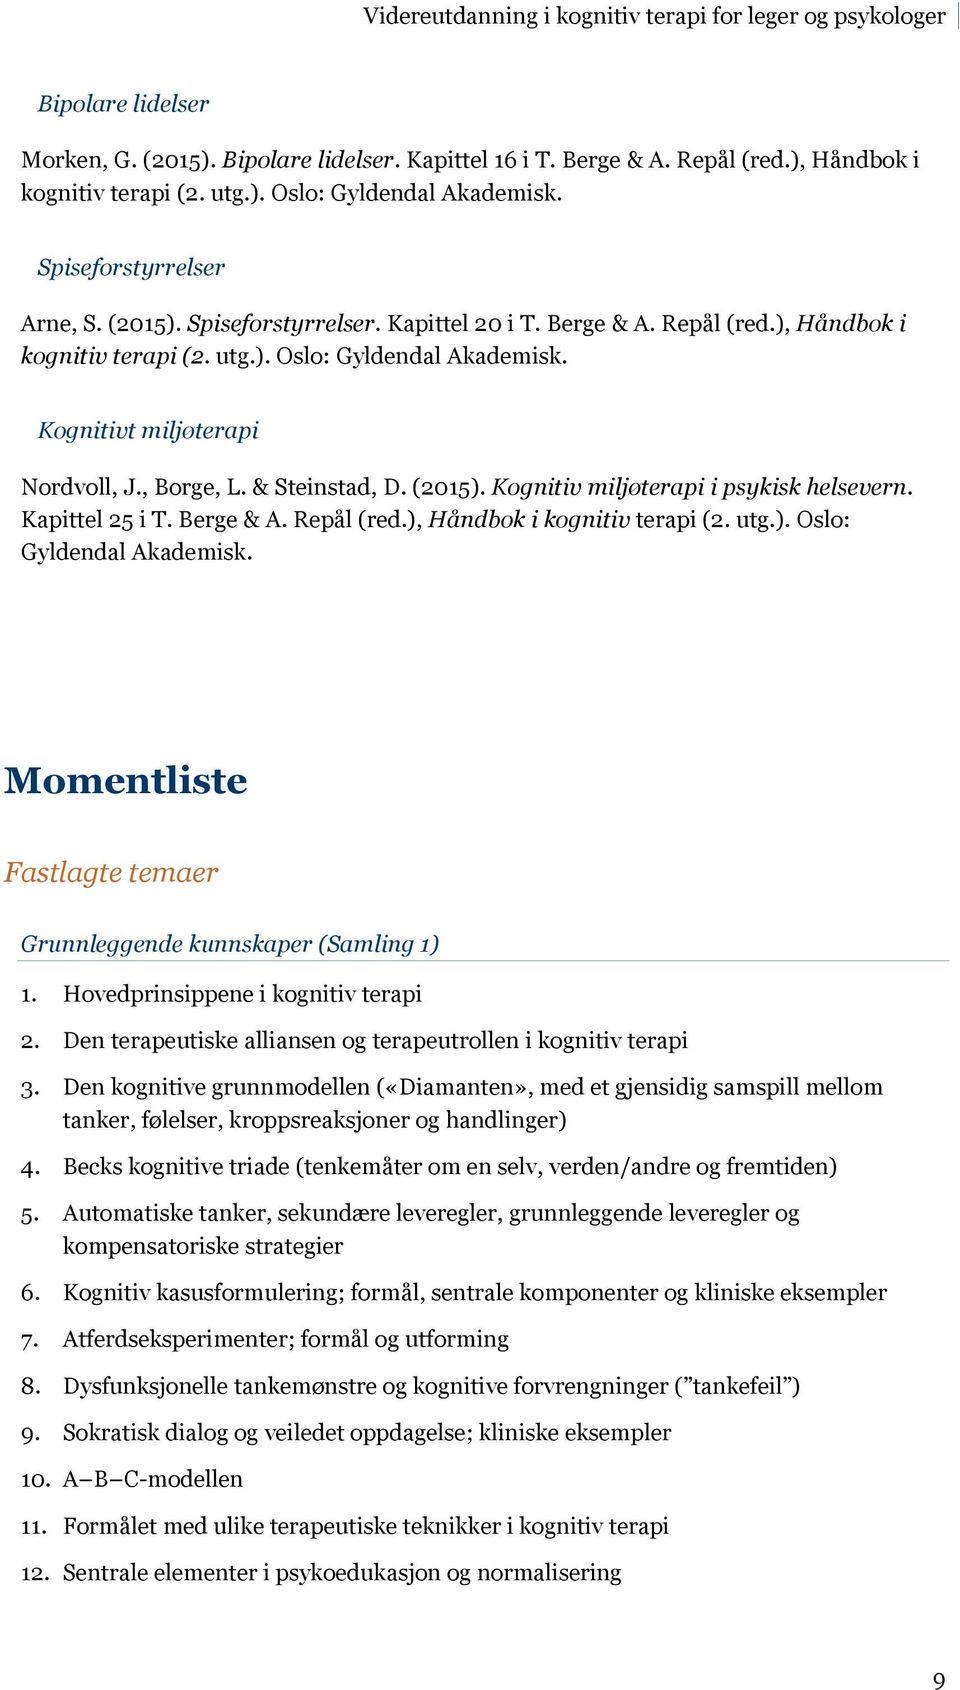 Kapittel 25 i T. Berge & A. Repål (red.), Håndbok i kognitiv terapi (2. utg.). Oslo: Gyldendal Akademisk. Momentliste Fastlagte temaer Grunnleggende kunnskaper (Samling 1) 1.